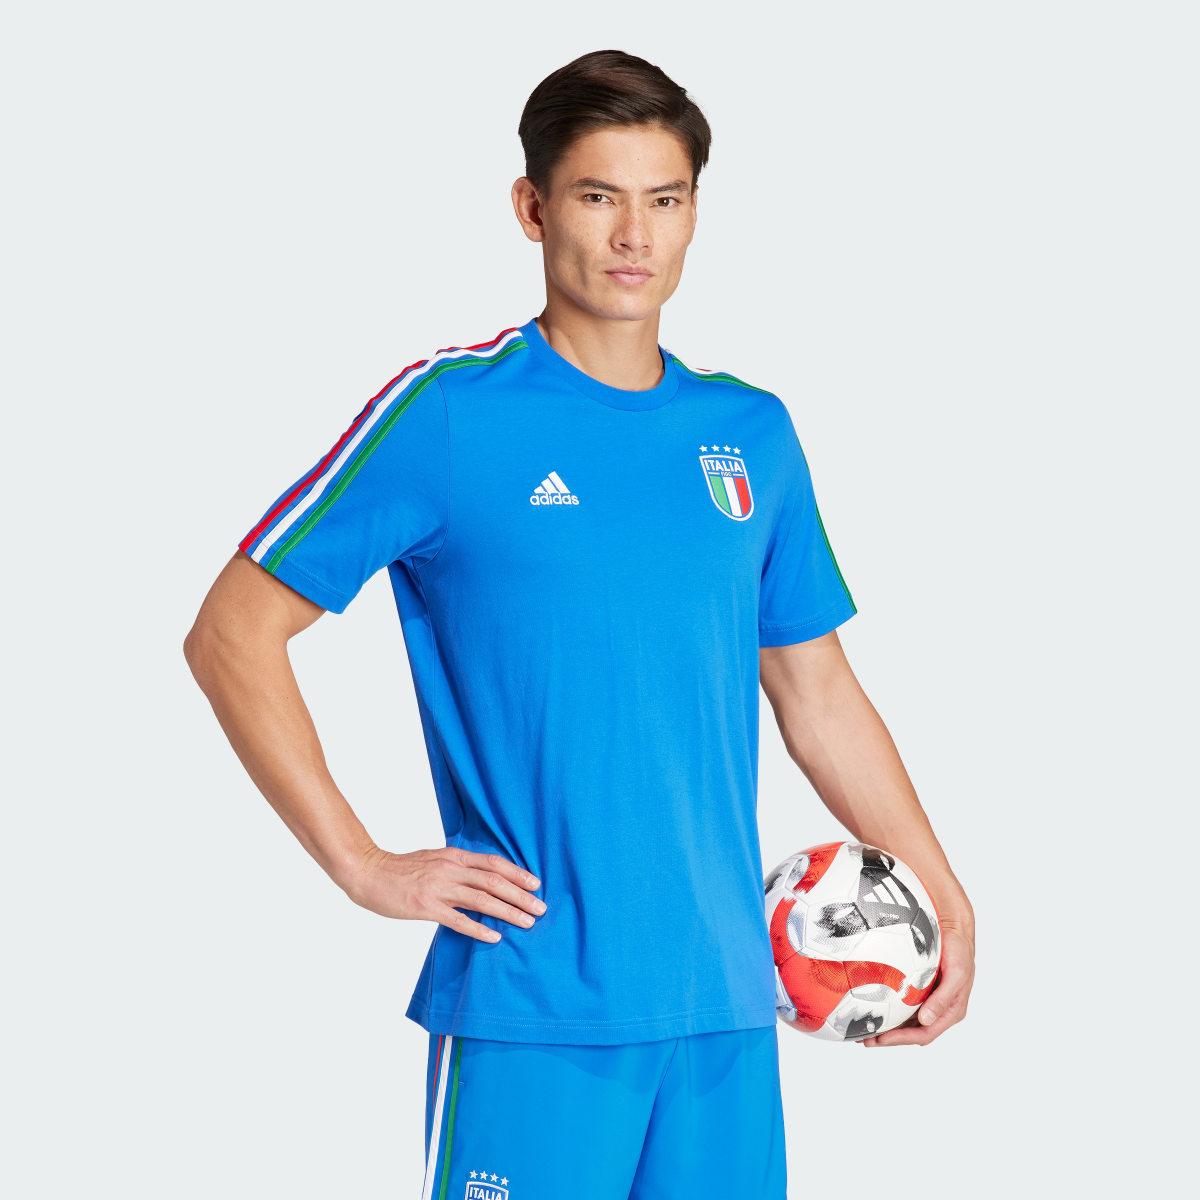 Adidas T-shirt 3-Stripes DNA da Itália. 4